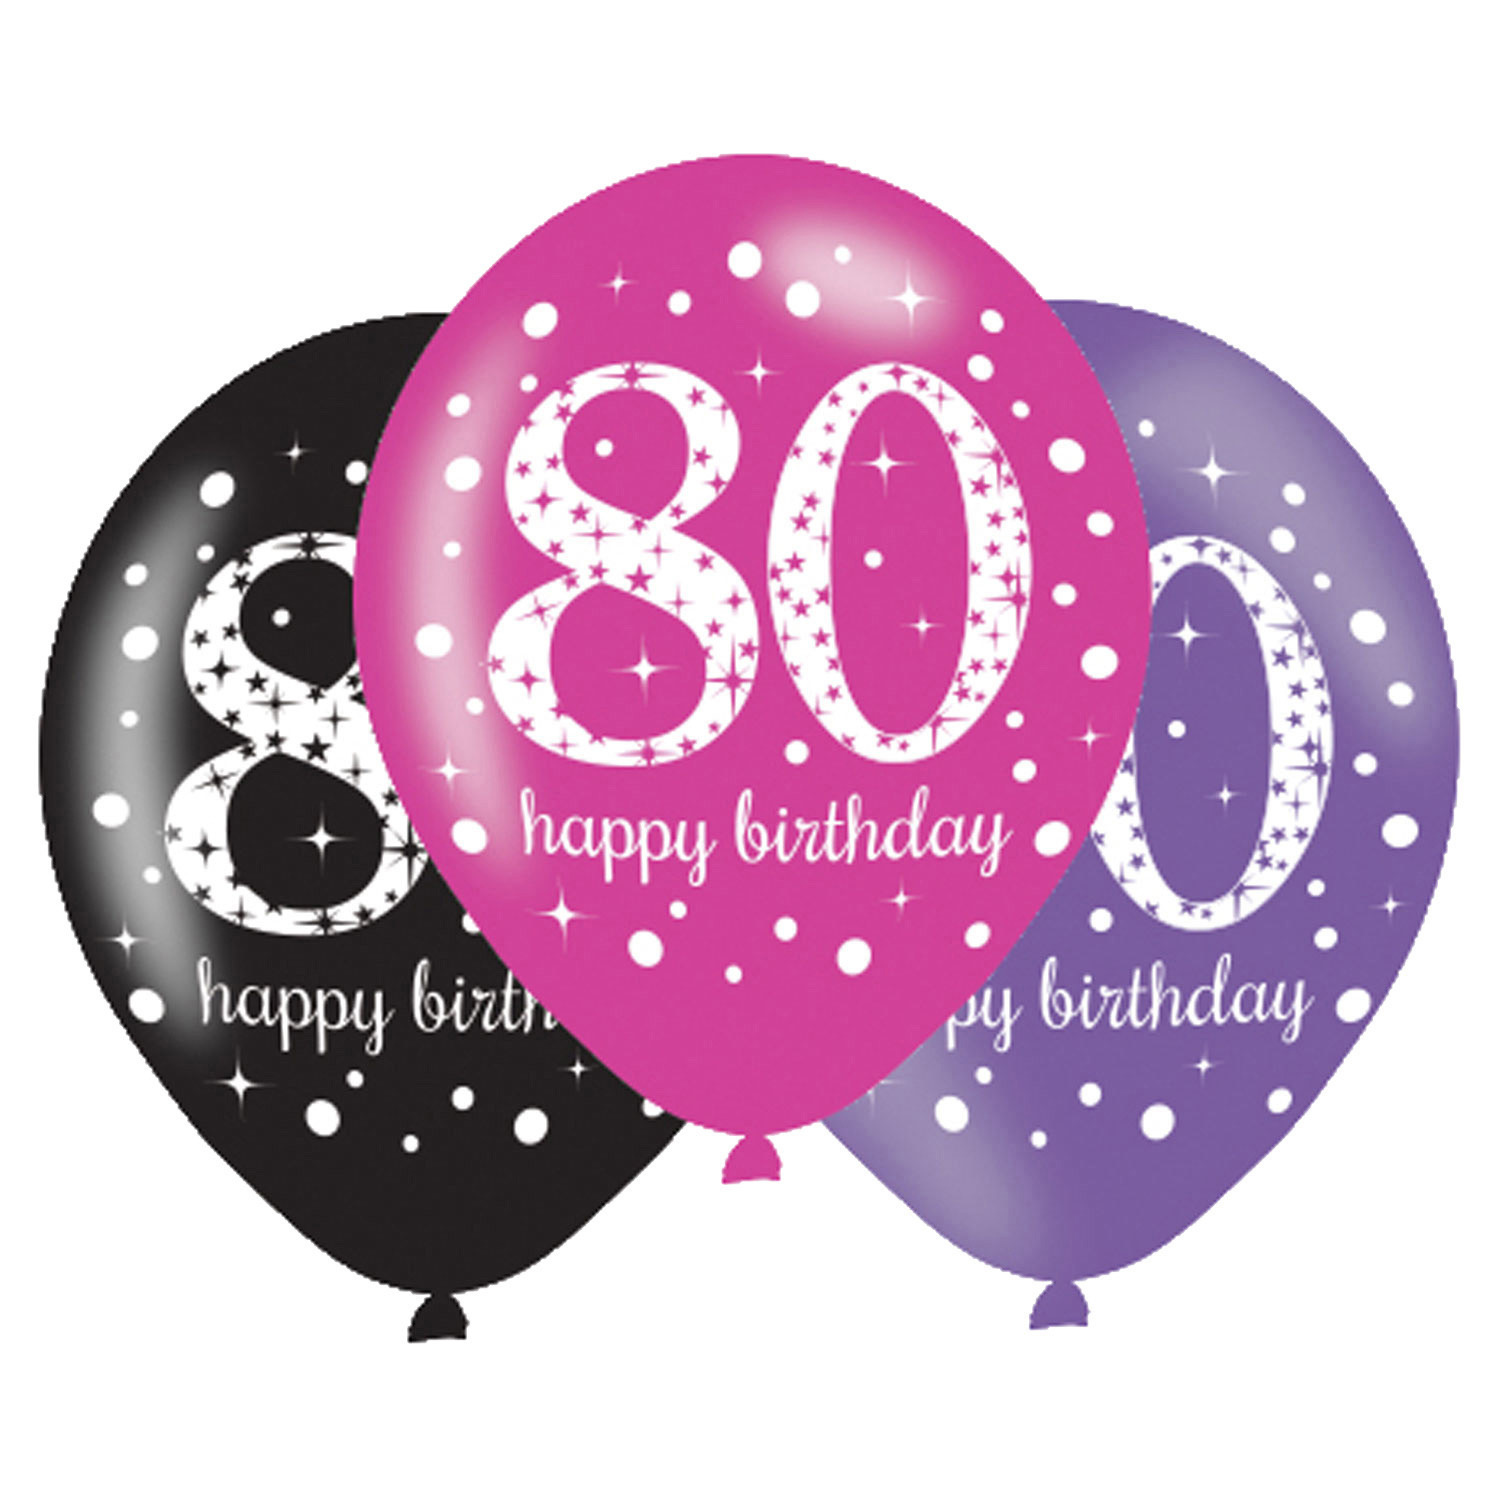 ontrouw belegd broodje kraai Ballonnen 80 Jaar Happy Birthday Roze 27,5cm 6st - Partywinkel